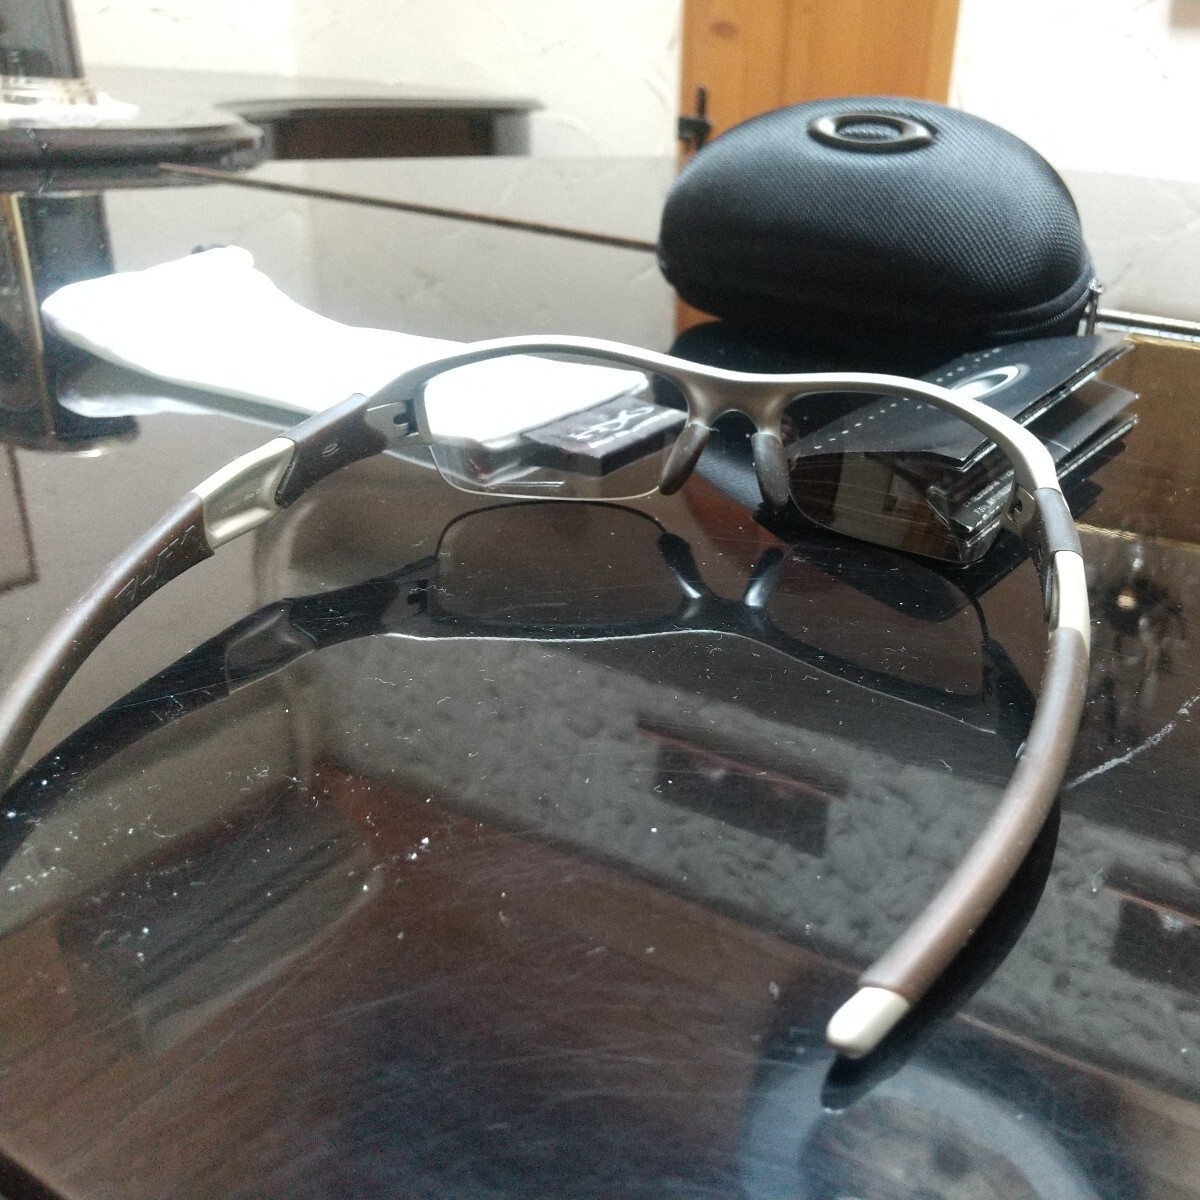 OAKLEY Oacley спортивные солнцезащитные очки flak жакет свет вес кейс инструкция легкий прекрасный товар б/у товар 